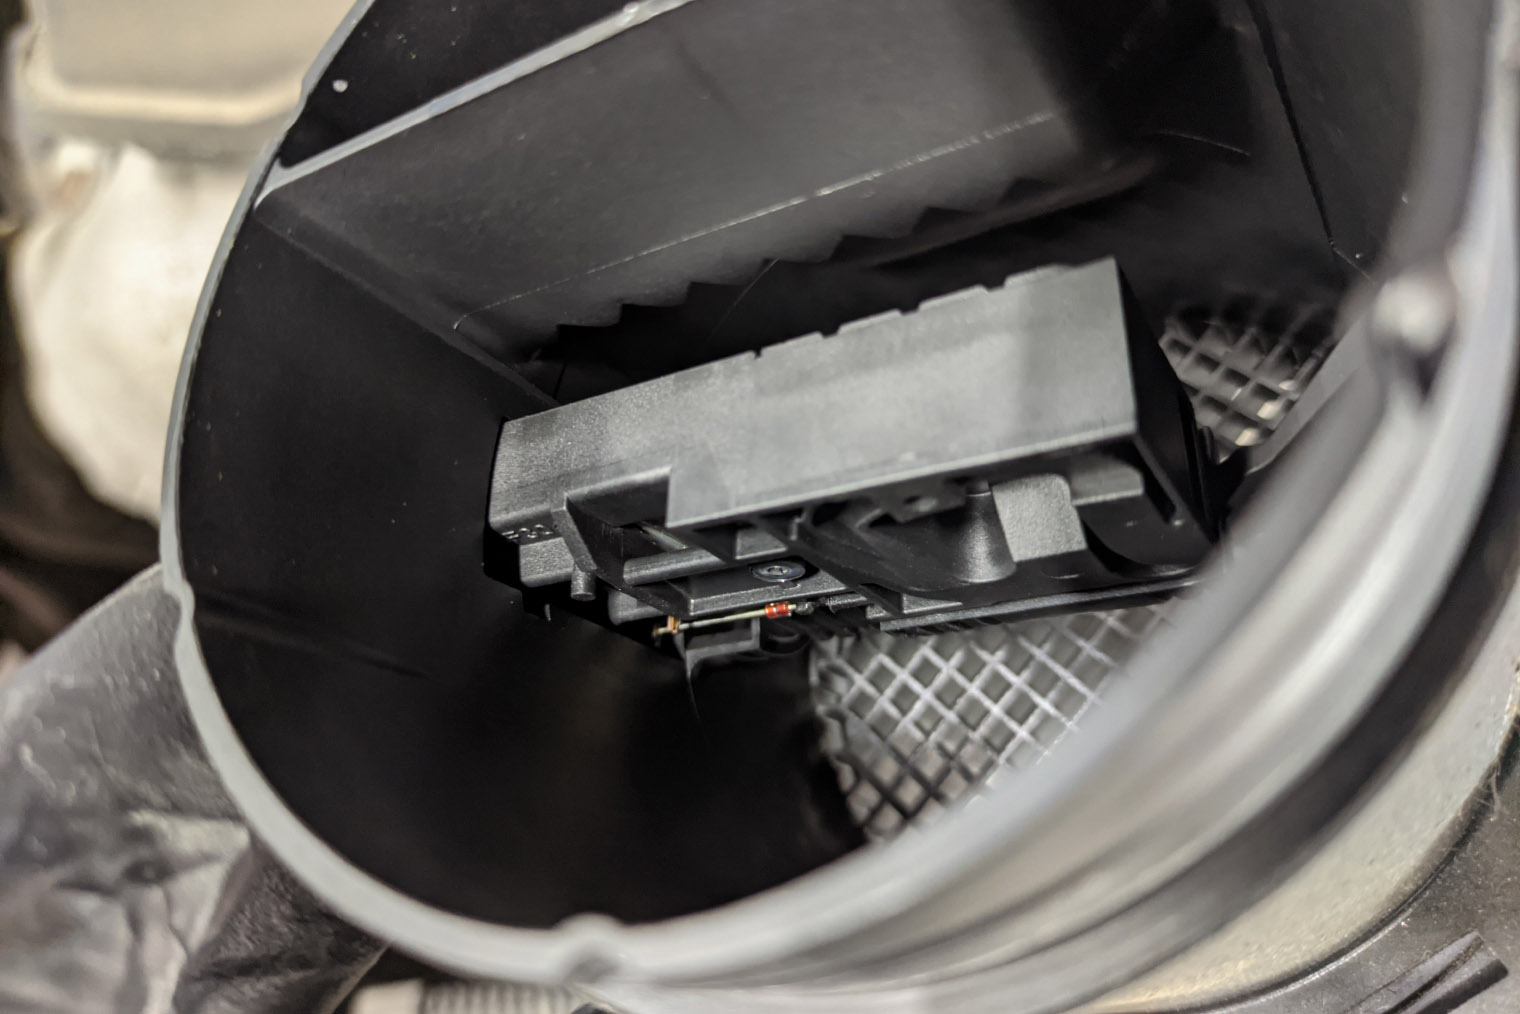 ДМРВ на Volkswagen Touareg 2016 года, расположен сразу за воздушным фильтром. Сетка перед ним — не предохранительный фильтр от перчатки или ветоши, она выравнивает поток воздуха, чтобы датчик работал более корректно